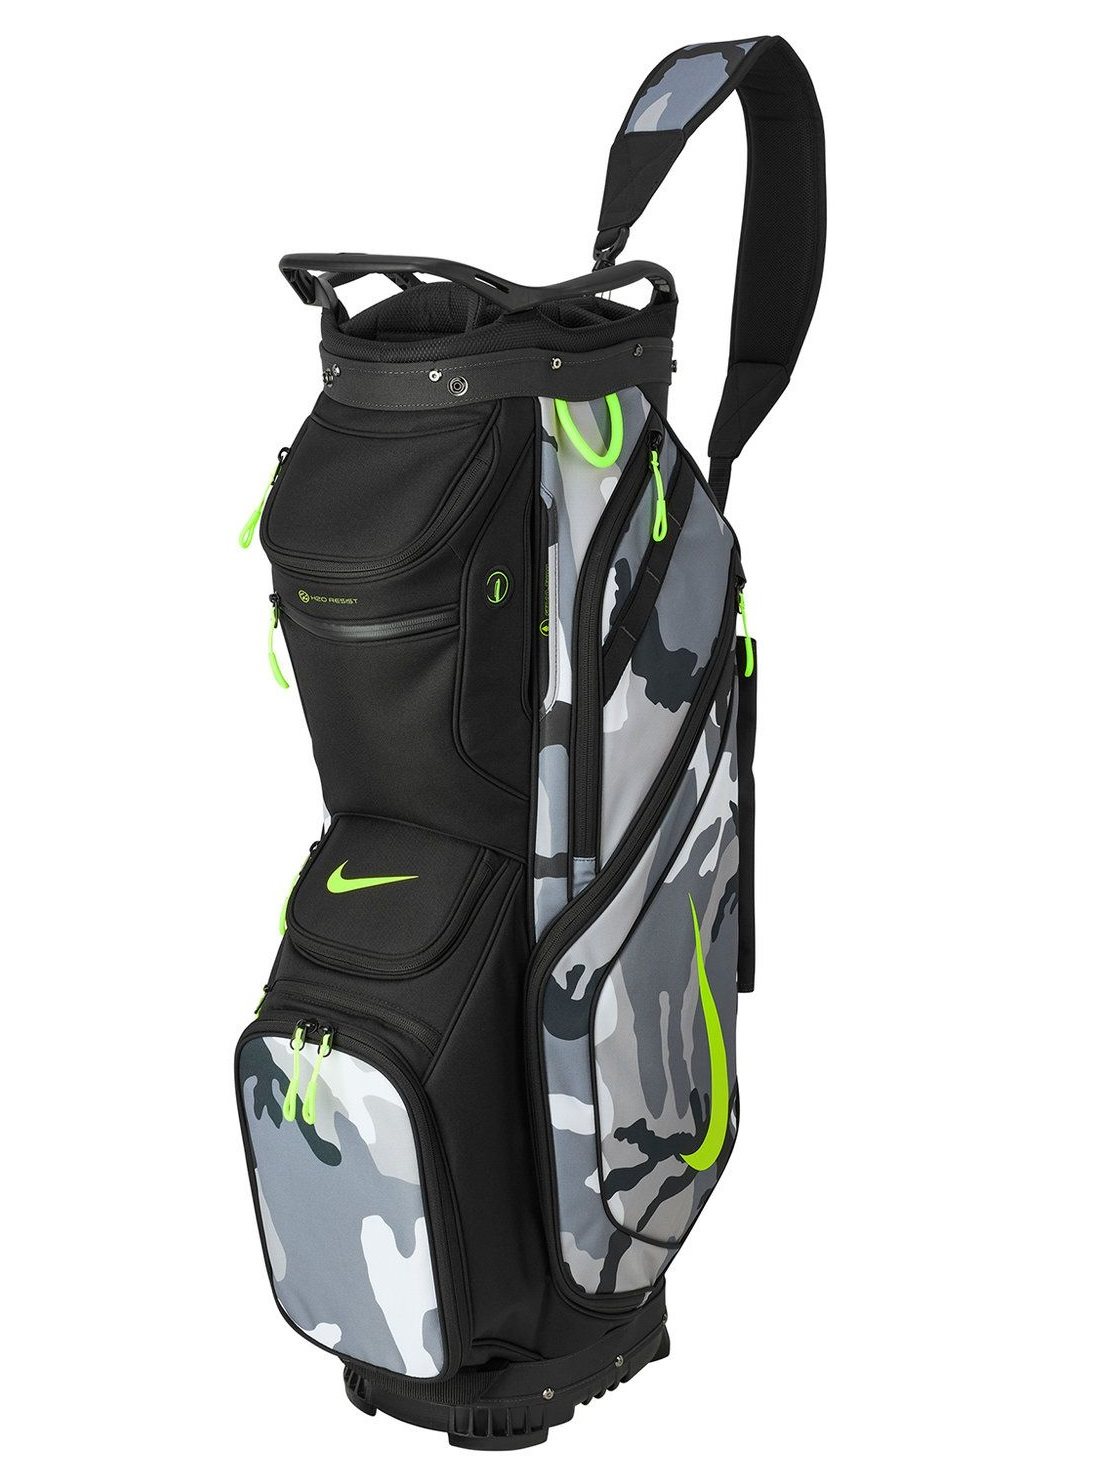 op gang brengen vermogen Blauwe plek Nike golftas Performance Cart Bag zwart-camo - Golftassen, Golfclubs,  Golfschoenen | Ook online kopen bij Golfers Point | Golfers Point